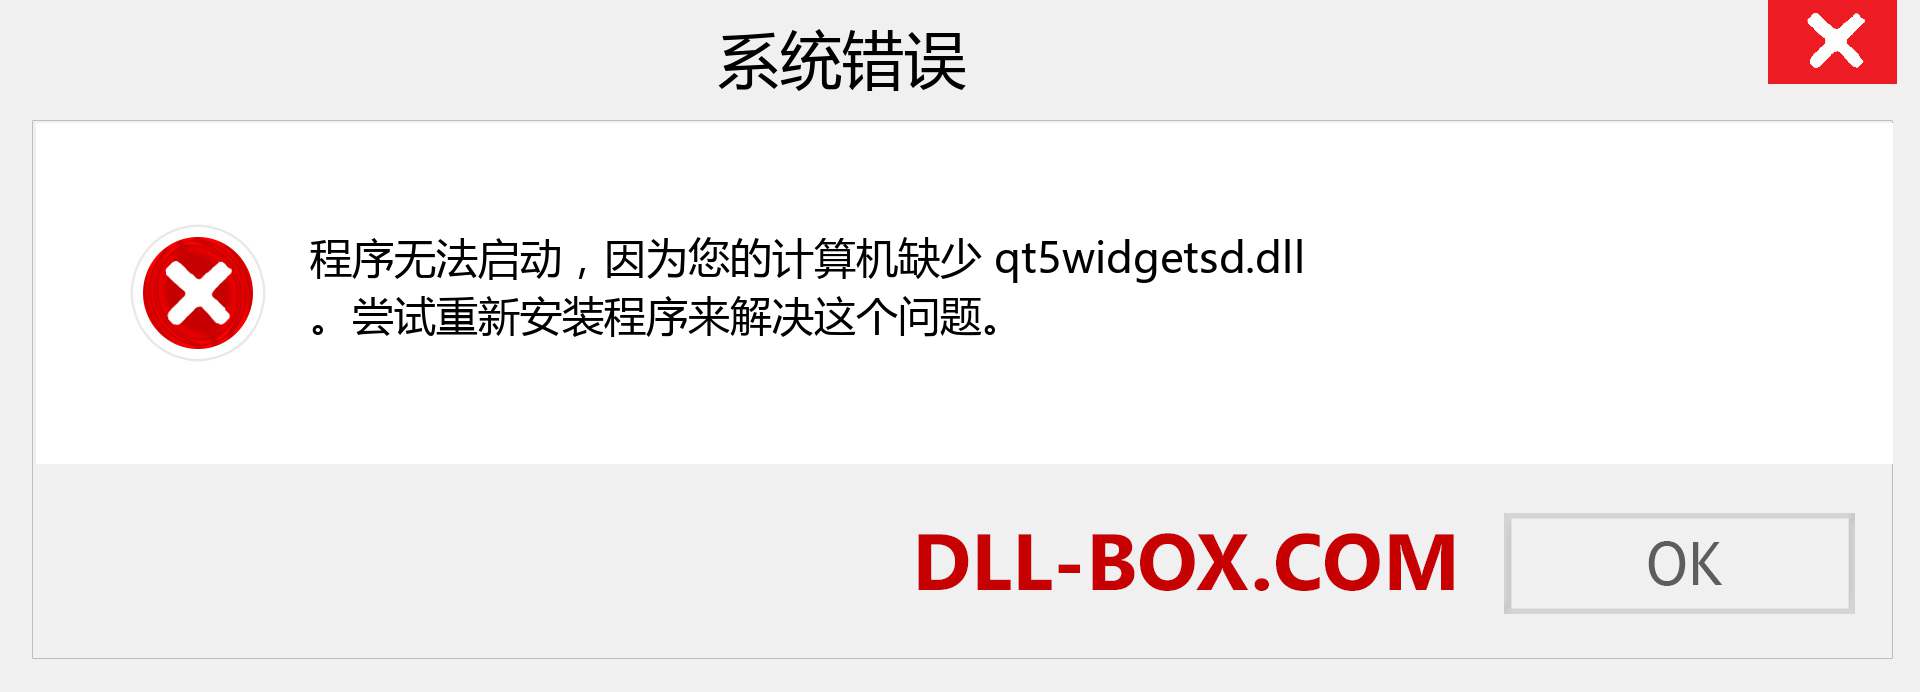 qt5widgetsd.dll 文件丢失？。 适用于 Windows 7、8、10 的下载 - 修复 Windows、照片、图像上的 qt5widgetsd dll 丢失错误